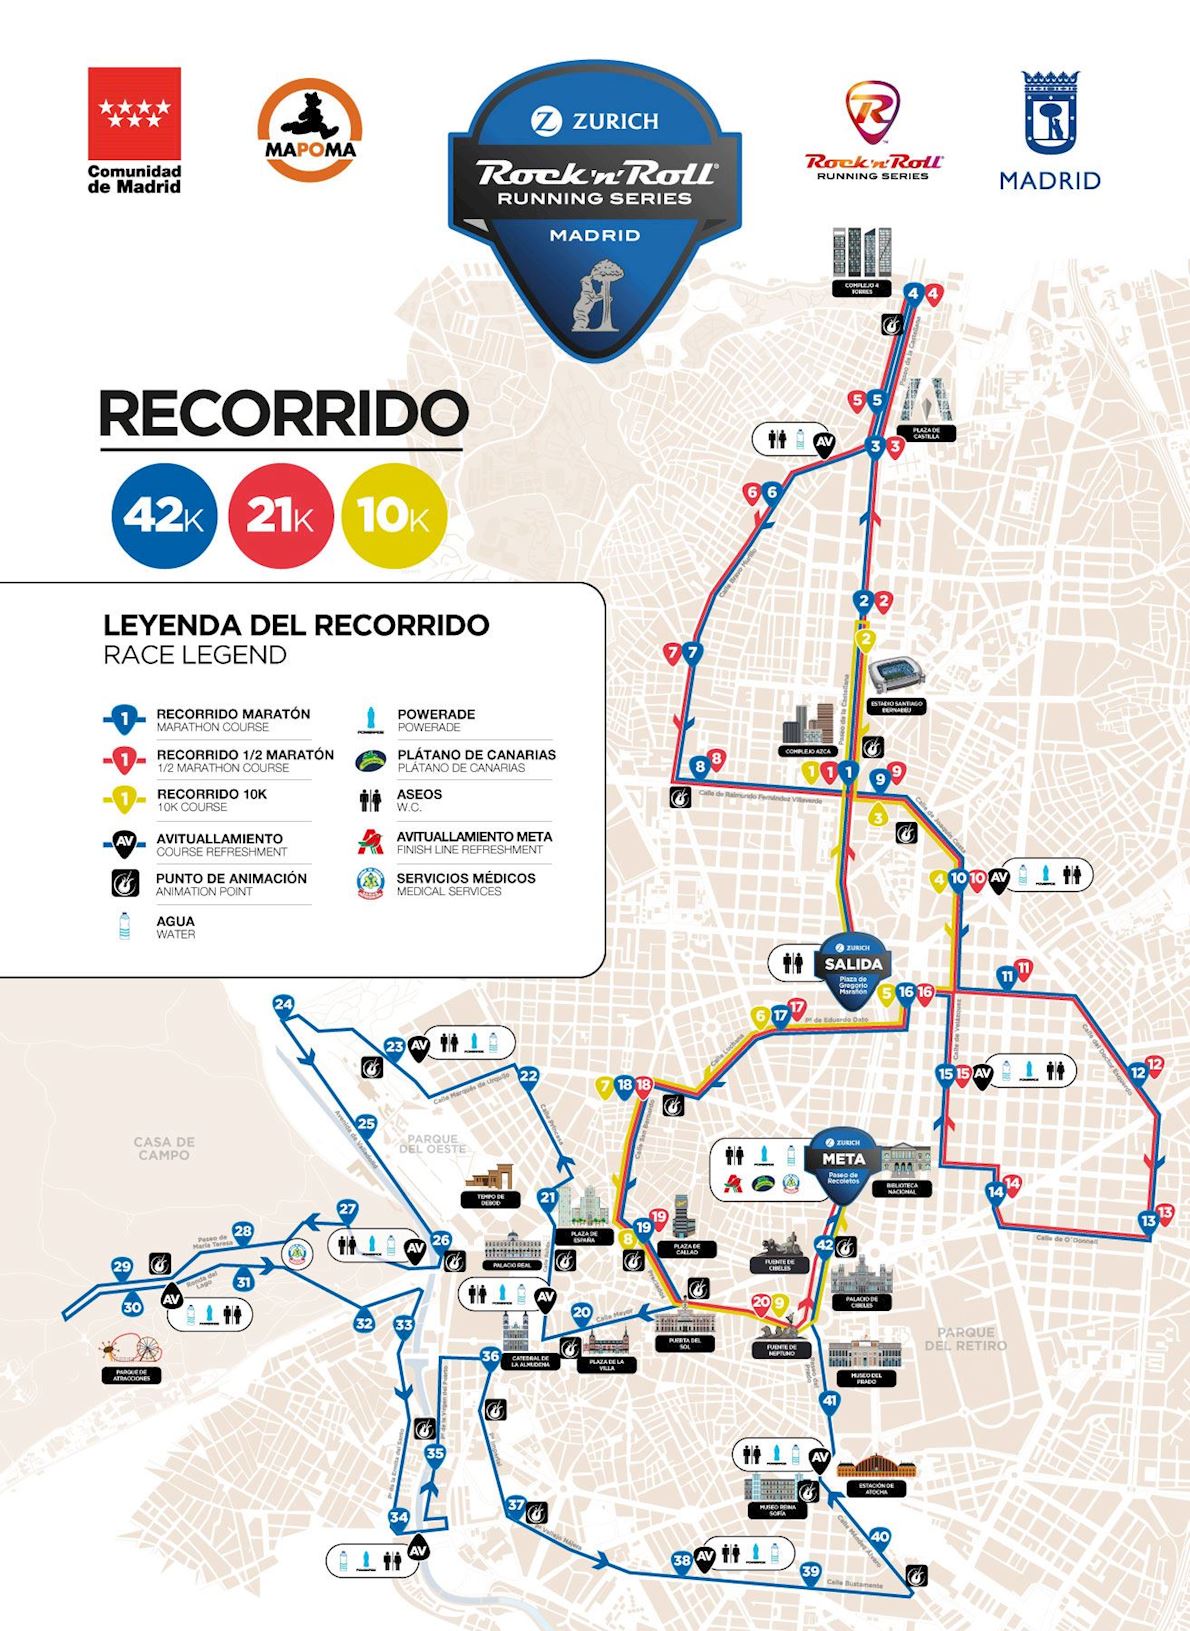 ZURICH Rock'n'Roll Running Series Madrid Routenkarte